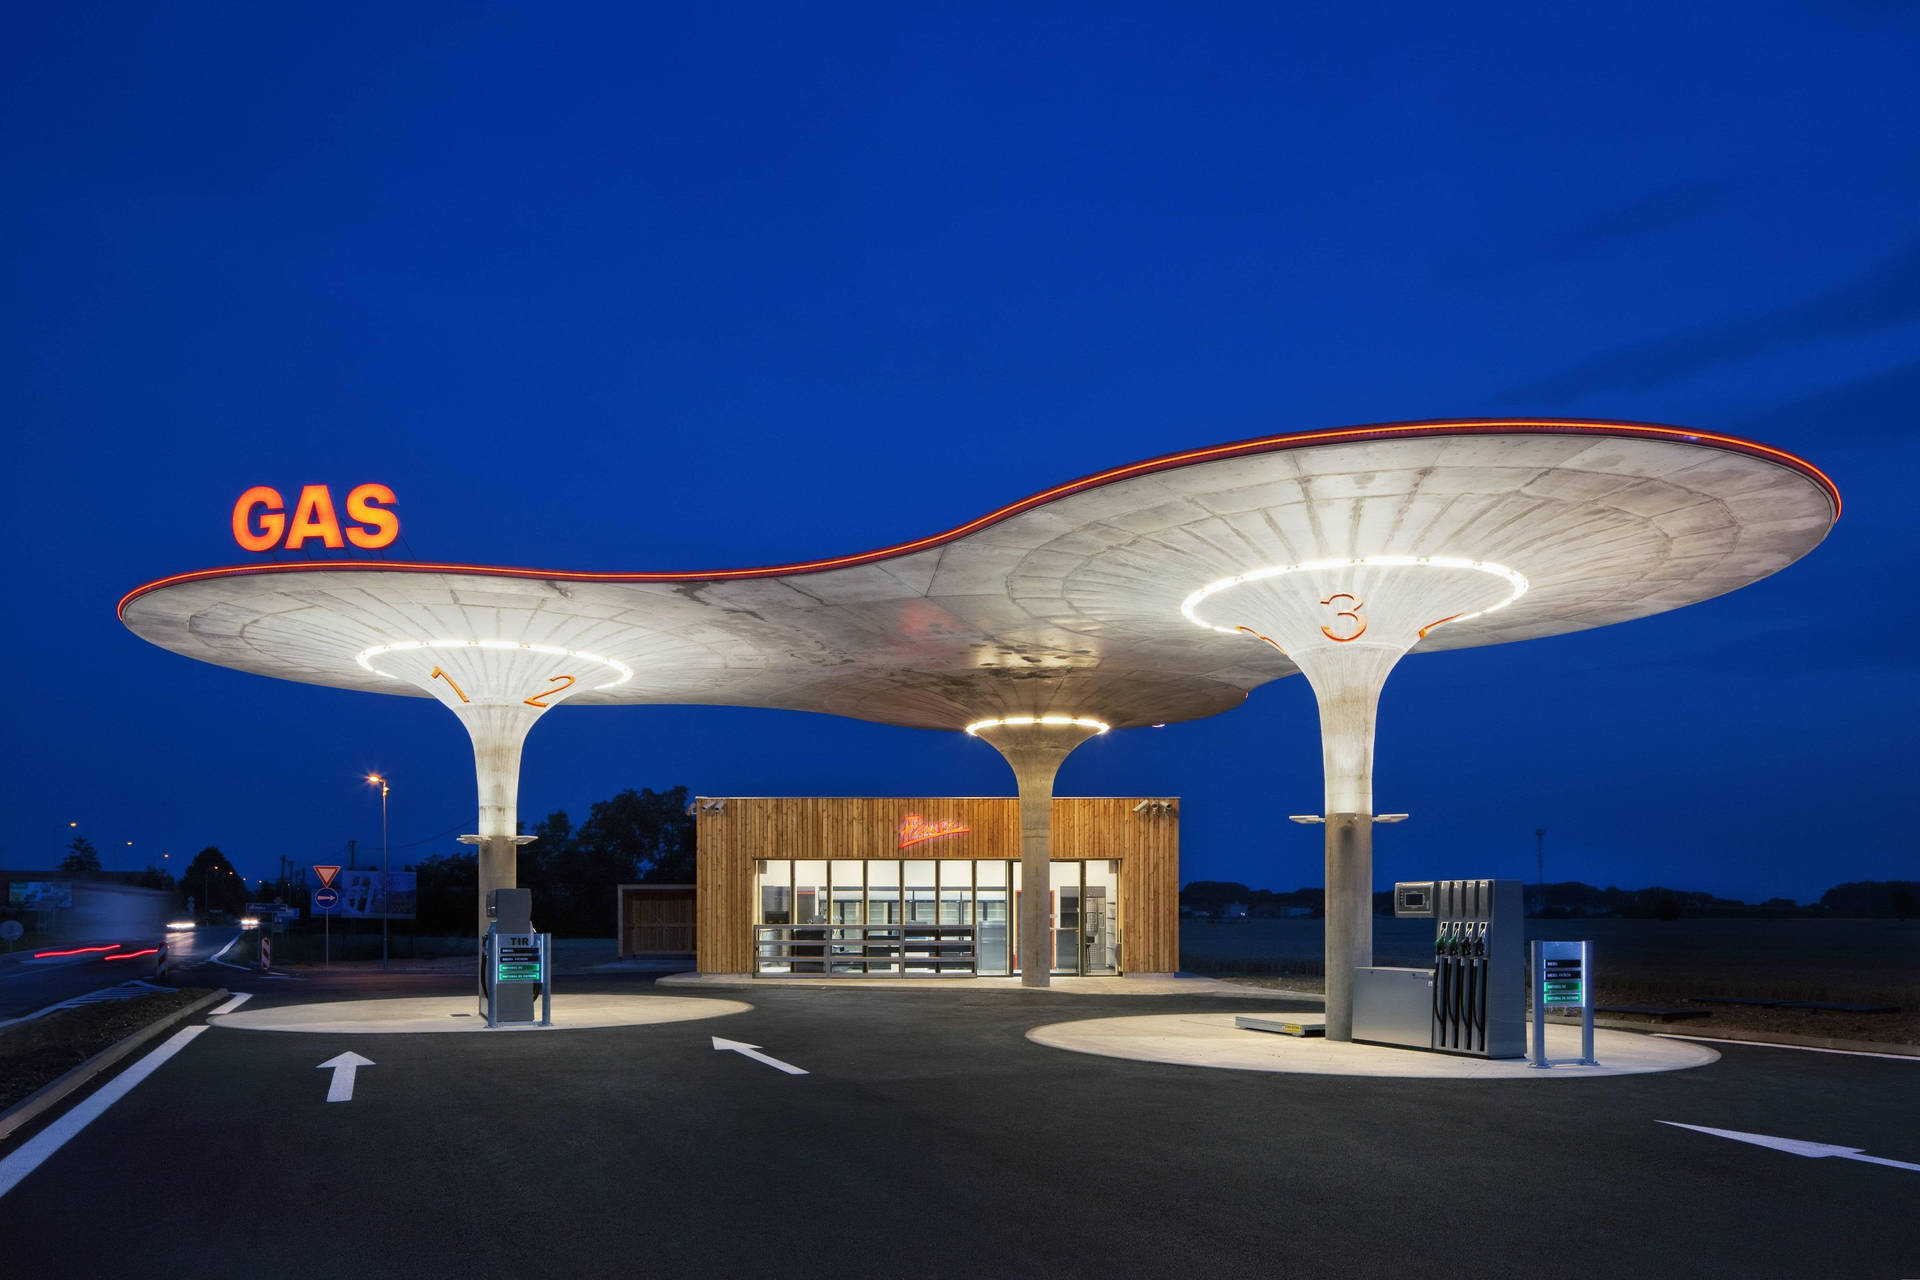 Slovakia Futuristic Gas Station